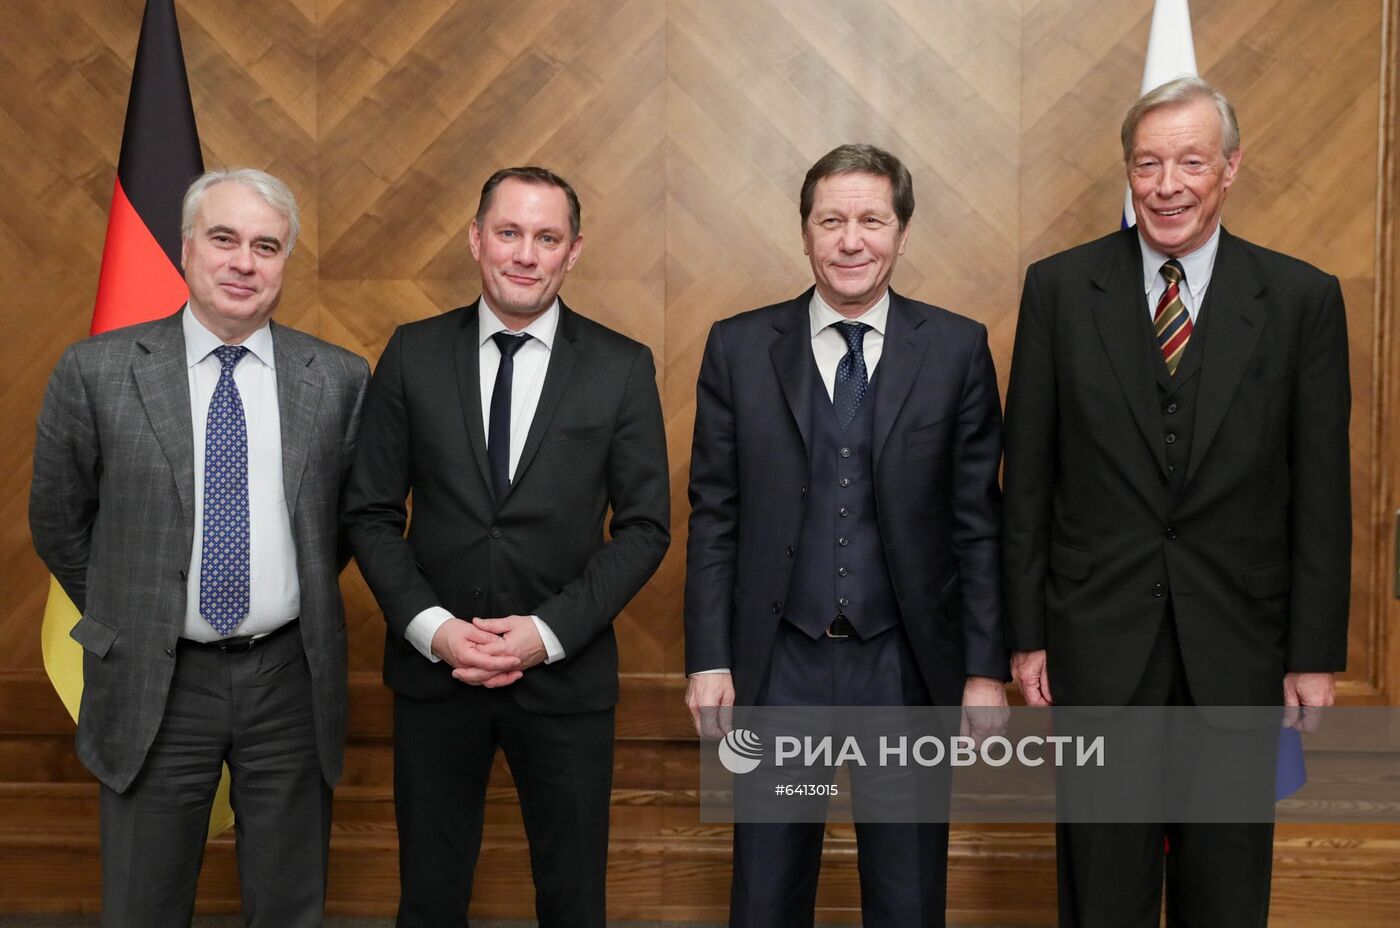 Первый заместитель председателя Госдумы А. Жуков встретился с делегацией партии "Альтернатива для Германии"